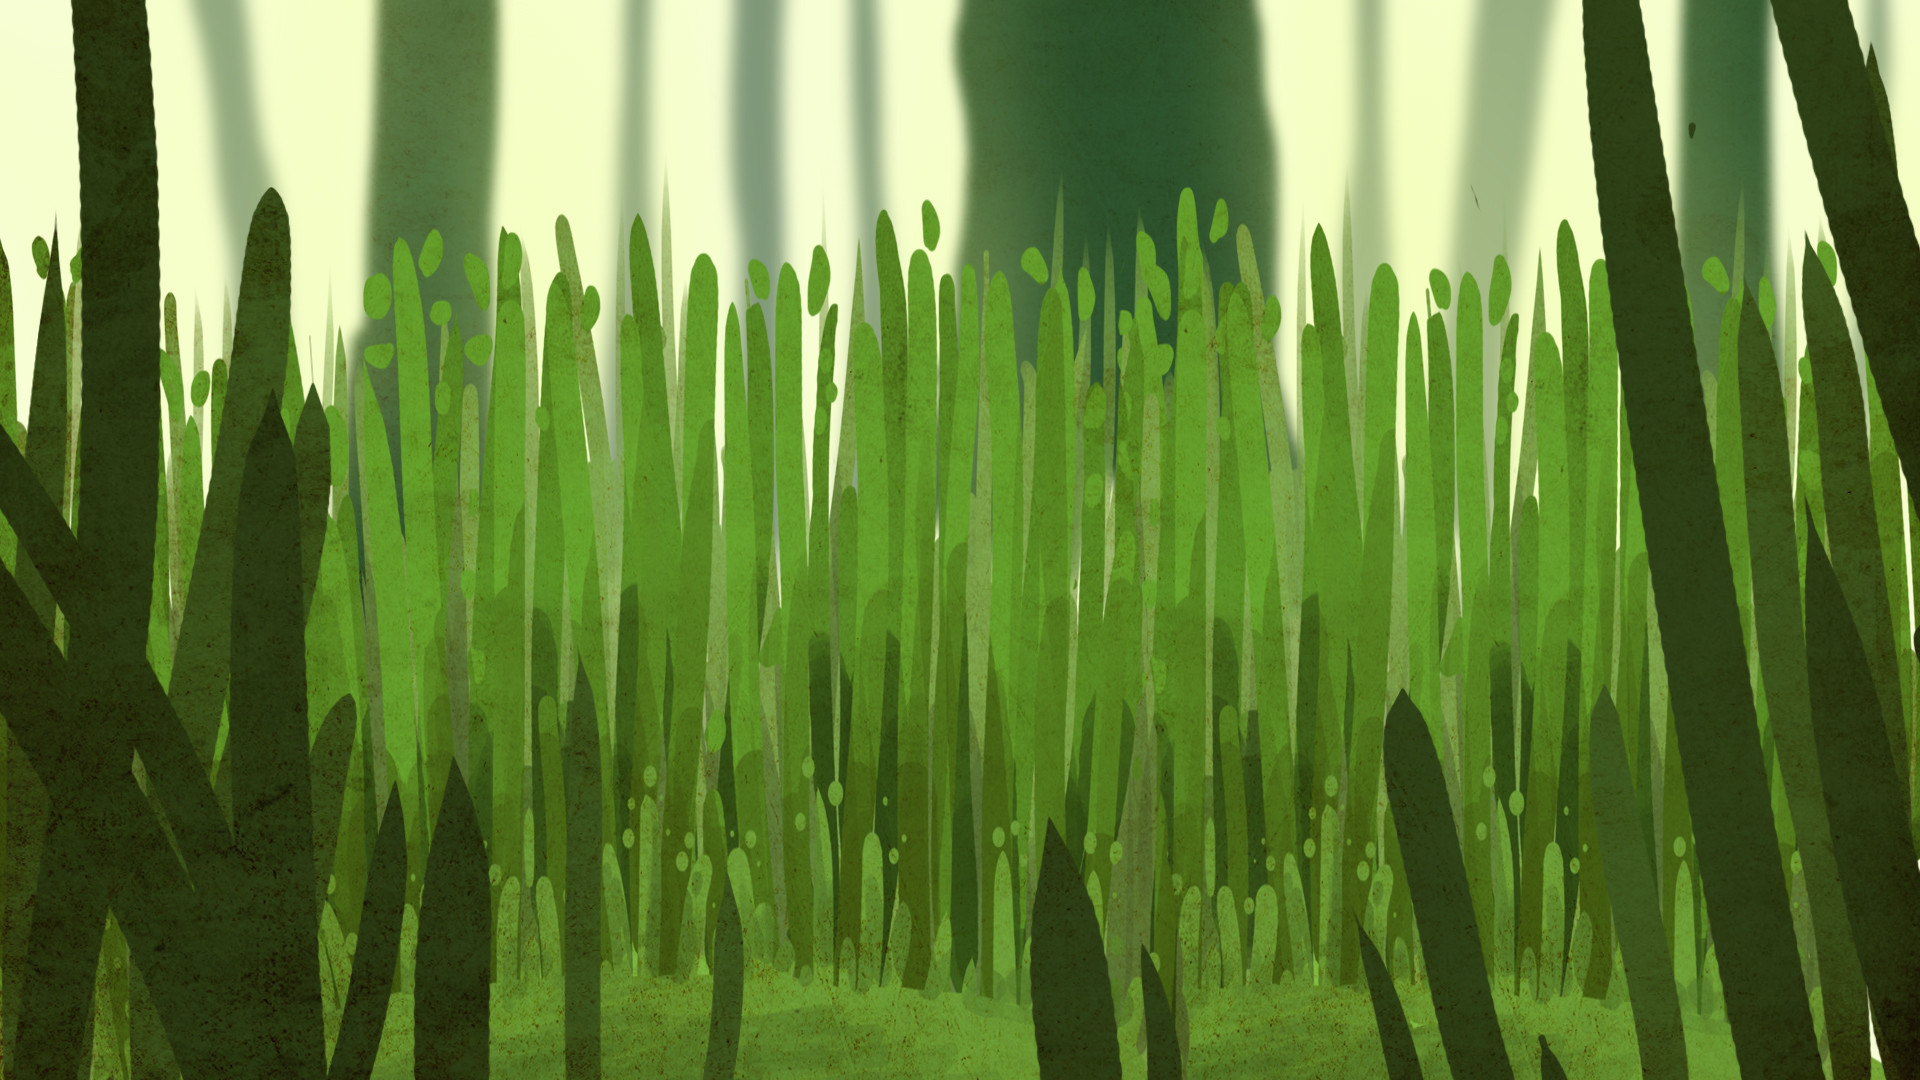 ArtStation - Tall grass, Aaron Jones